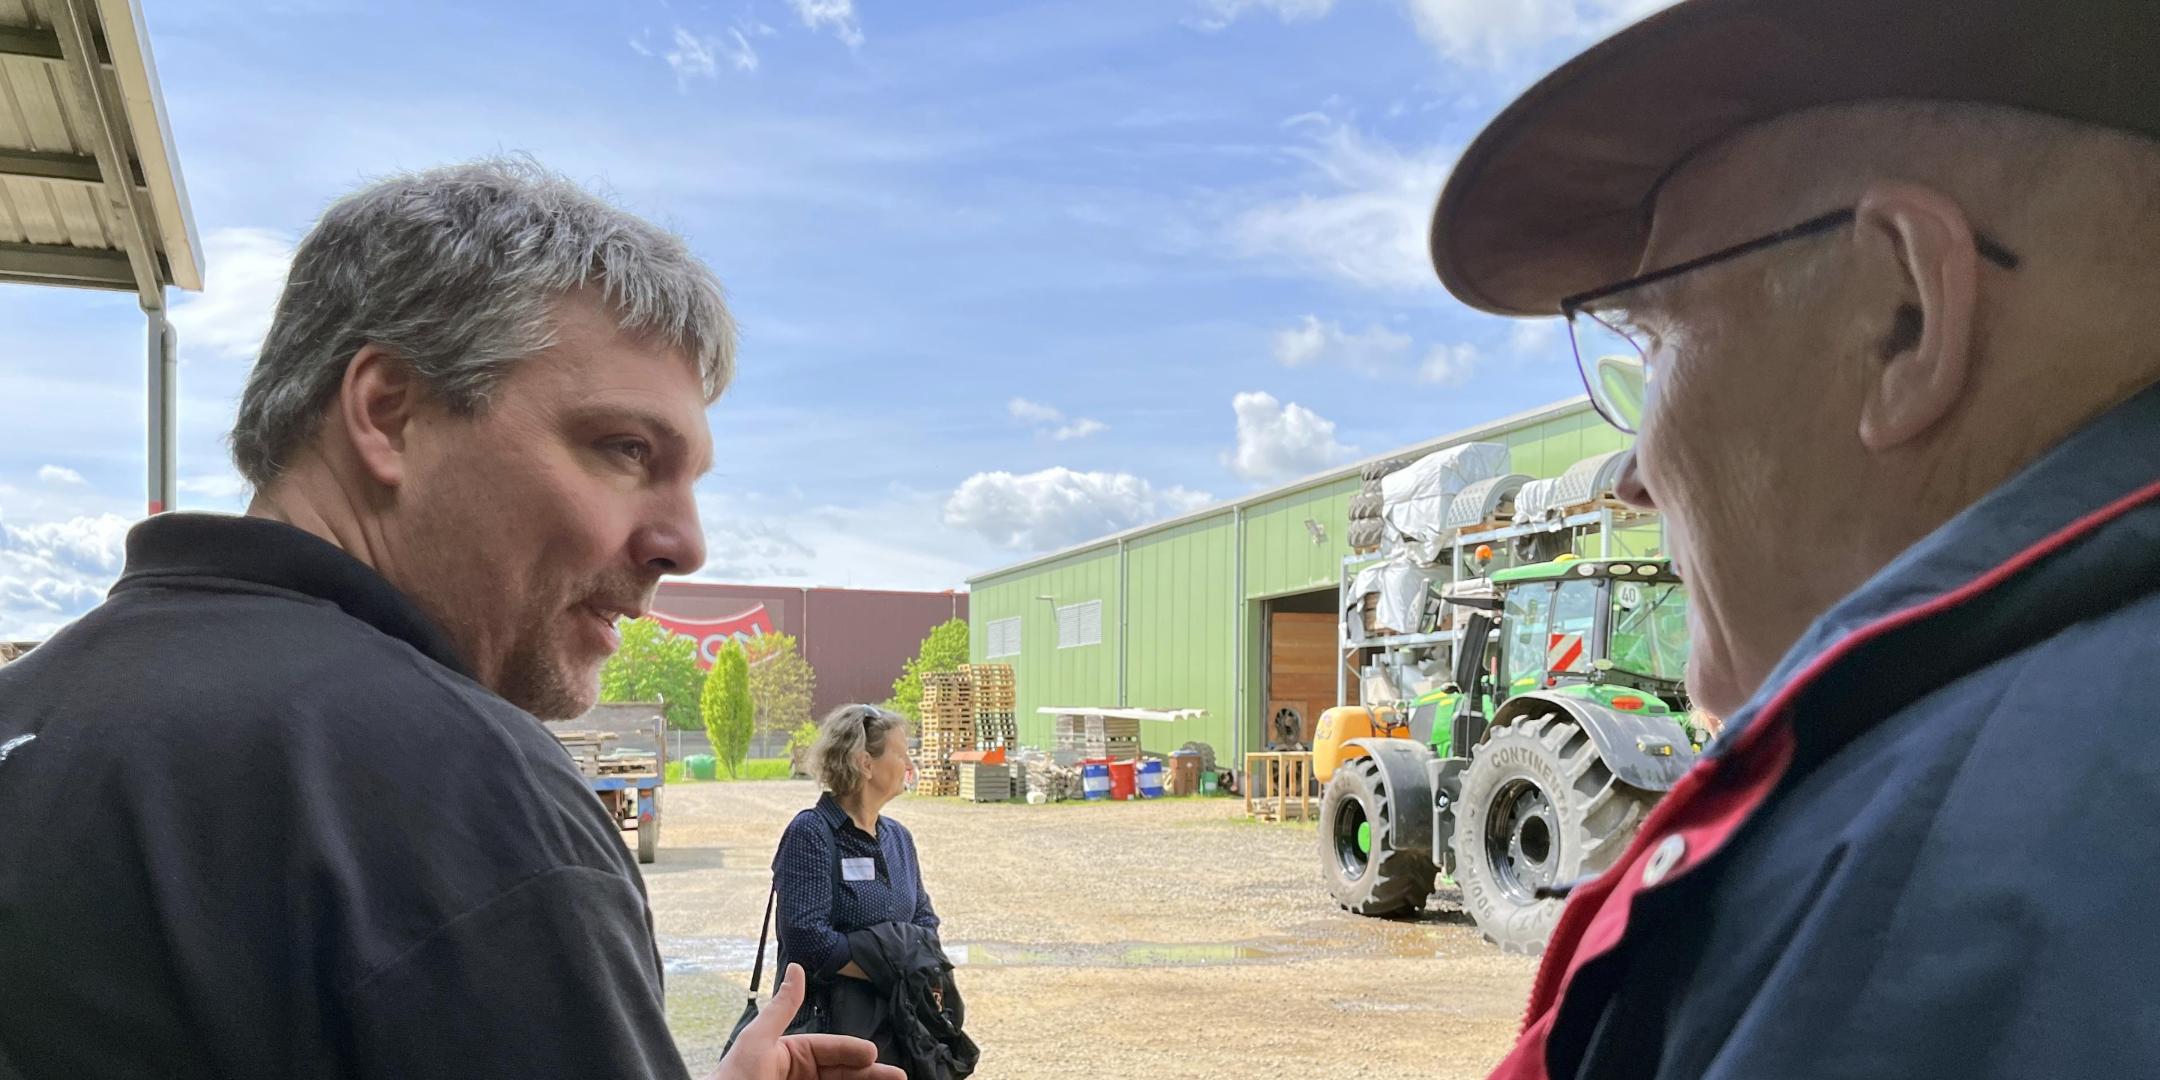 Zwei Männer im Gespräch, im Hintergrund ist ein Traktor zu sehen.